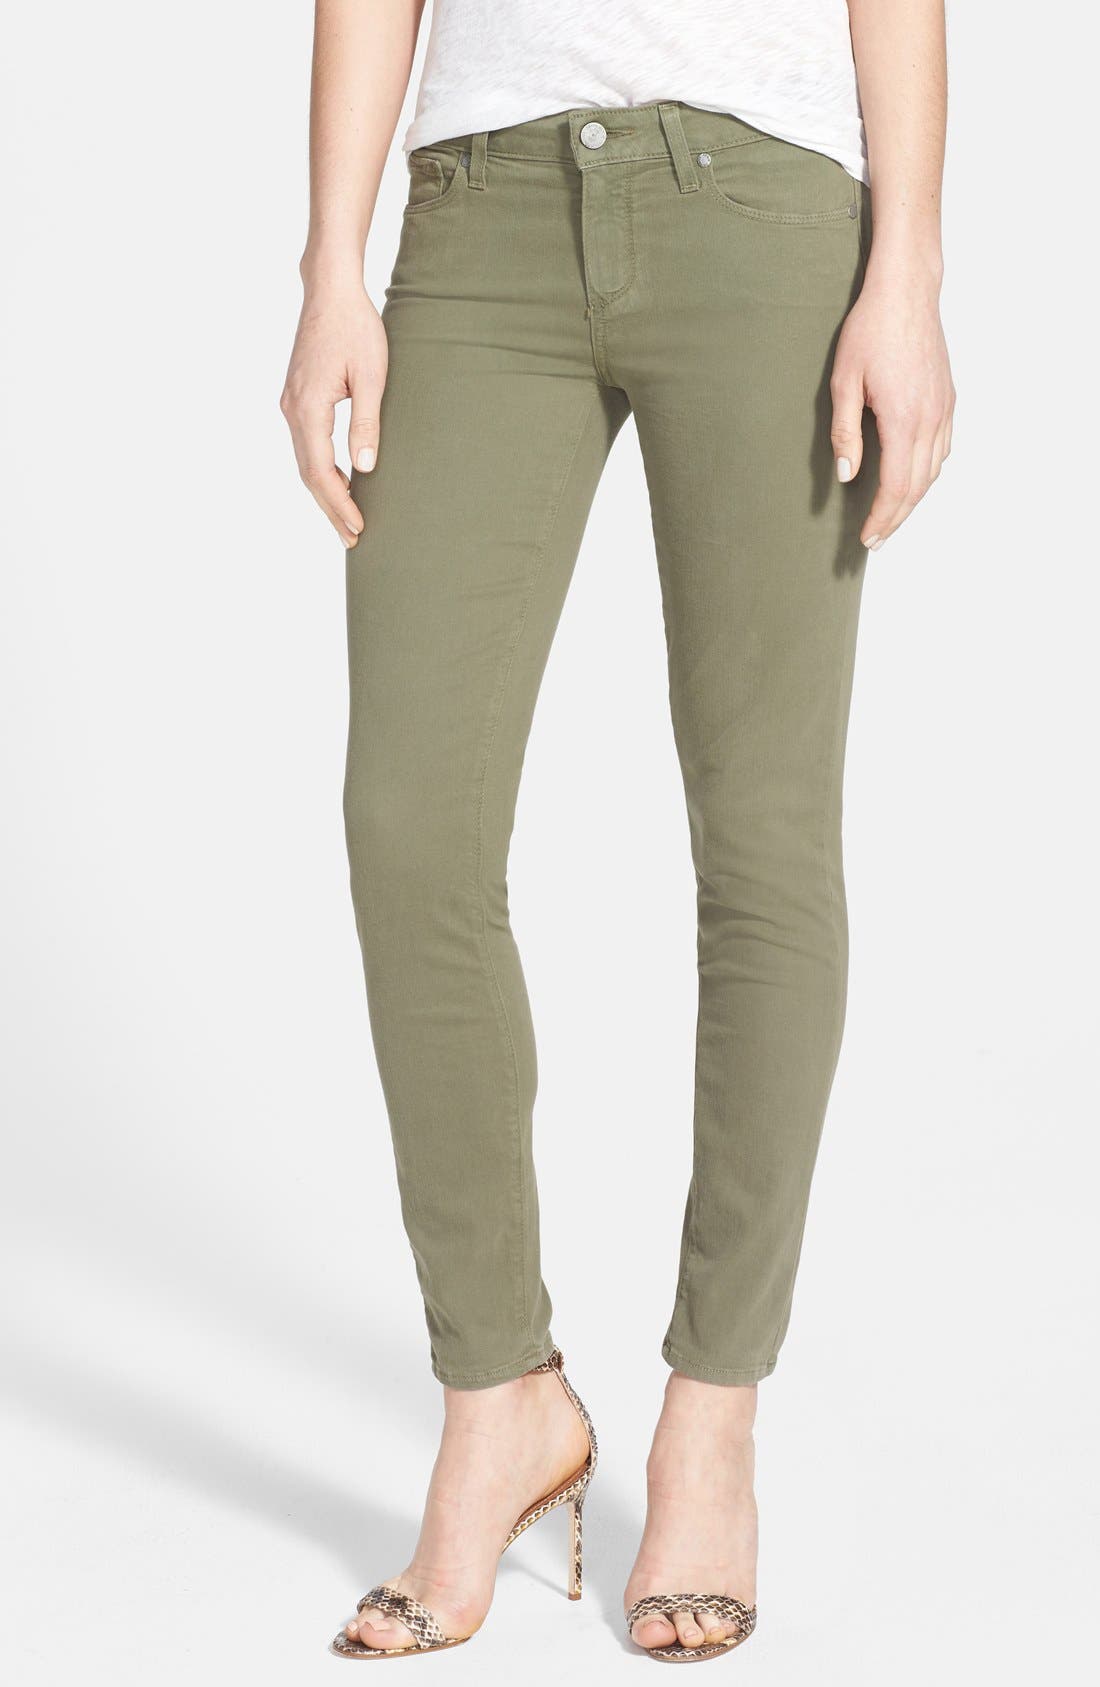 armani jeans back pocket design